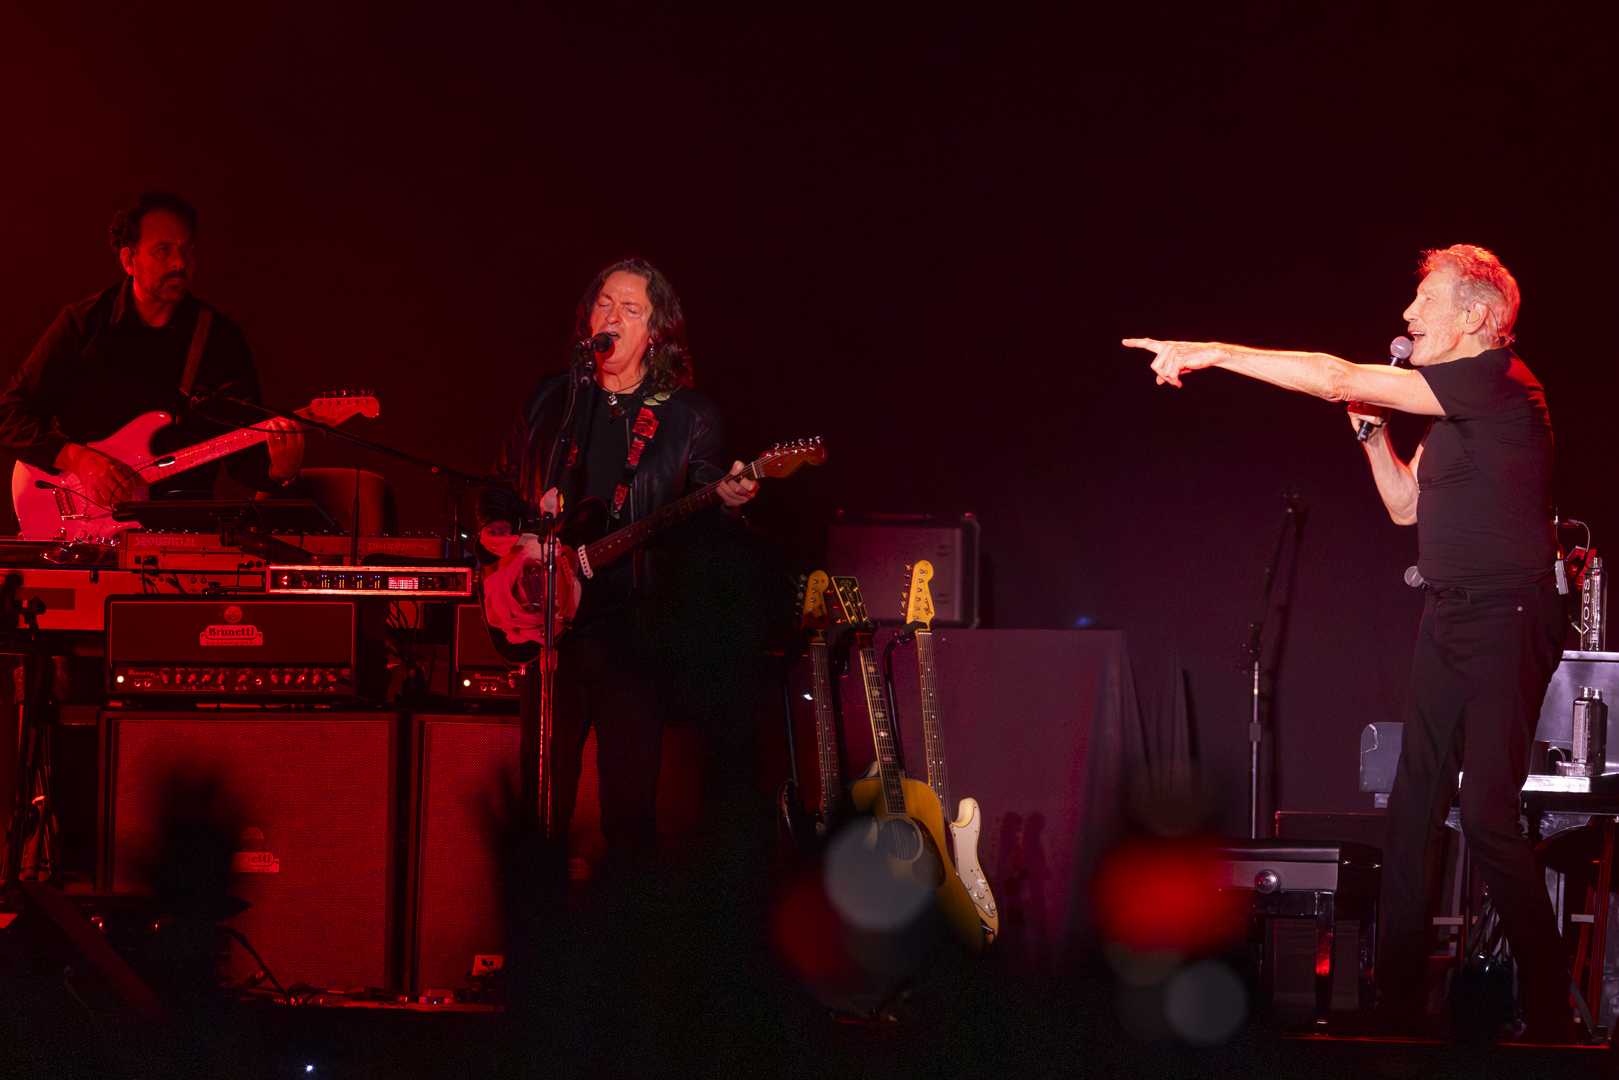 “Roger Waters encerra turnê no Brasil com show grandioso em São Paulo”.